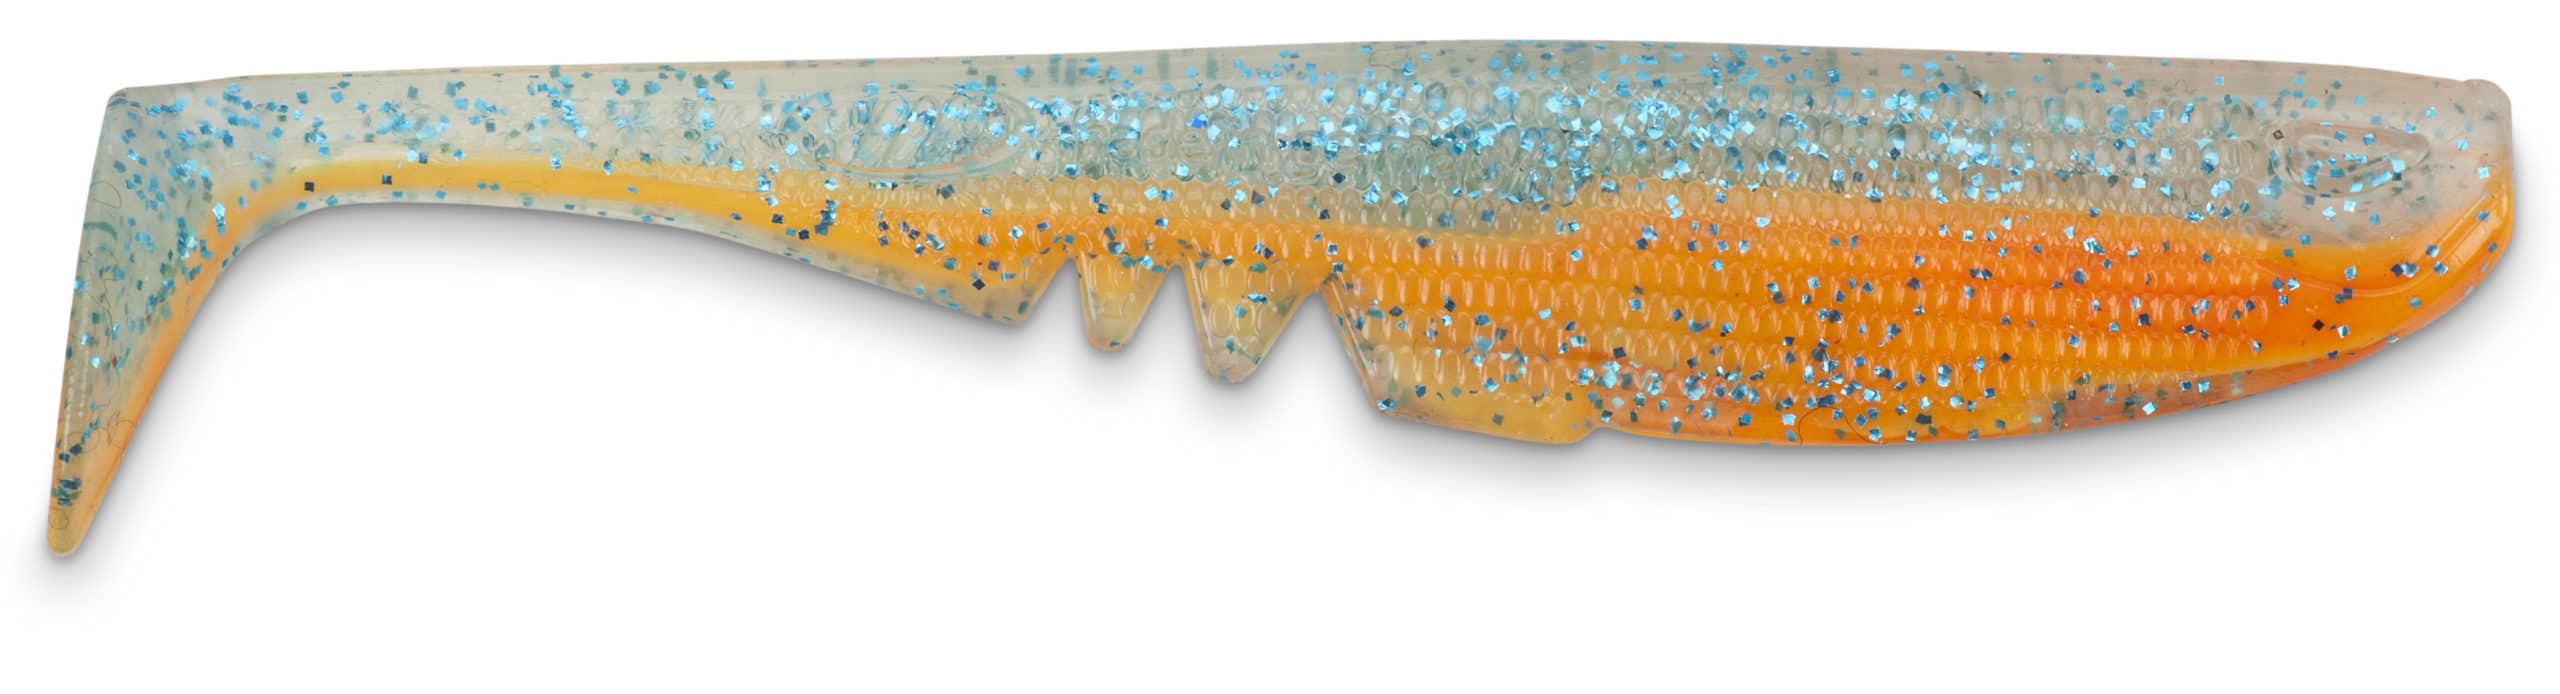 IC Racker Shad 10,5cm Blauwe Glitter Oranje